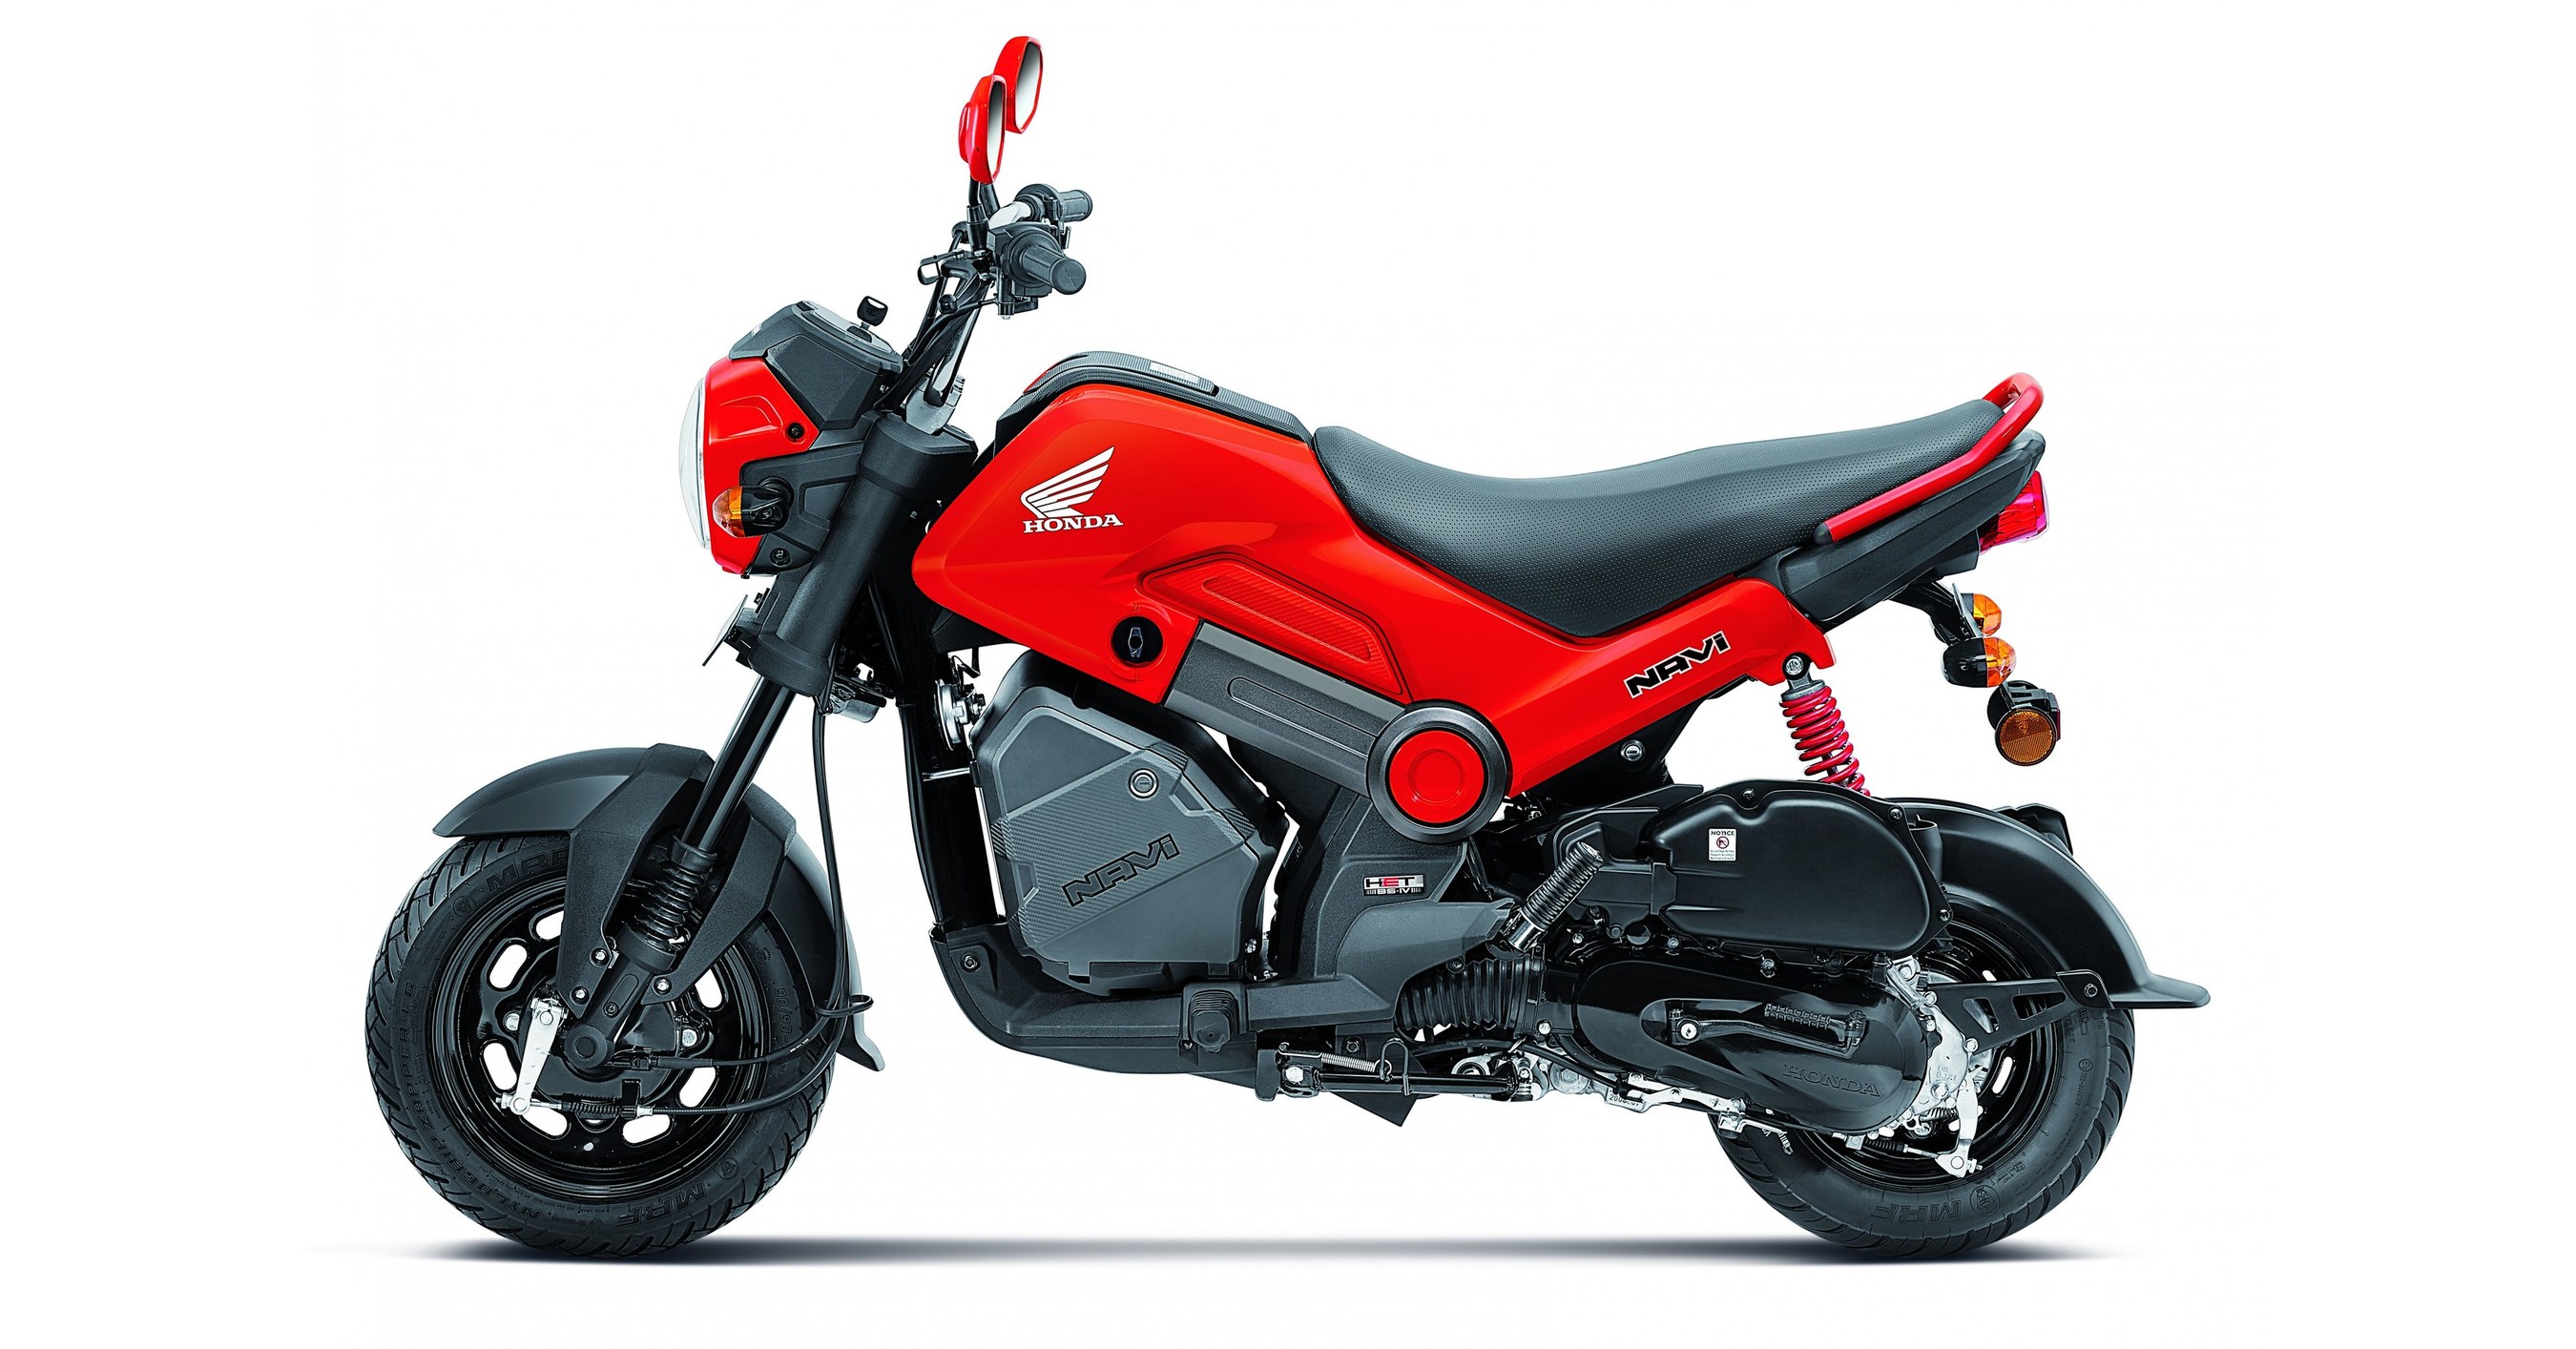 Llega A Mexico Honda Navi Un Nuevo Segmento De Motocicleta Dirigido A Jovenes Dinamicos Y Aventureros